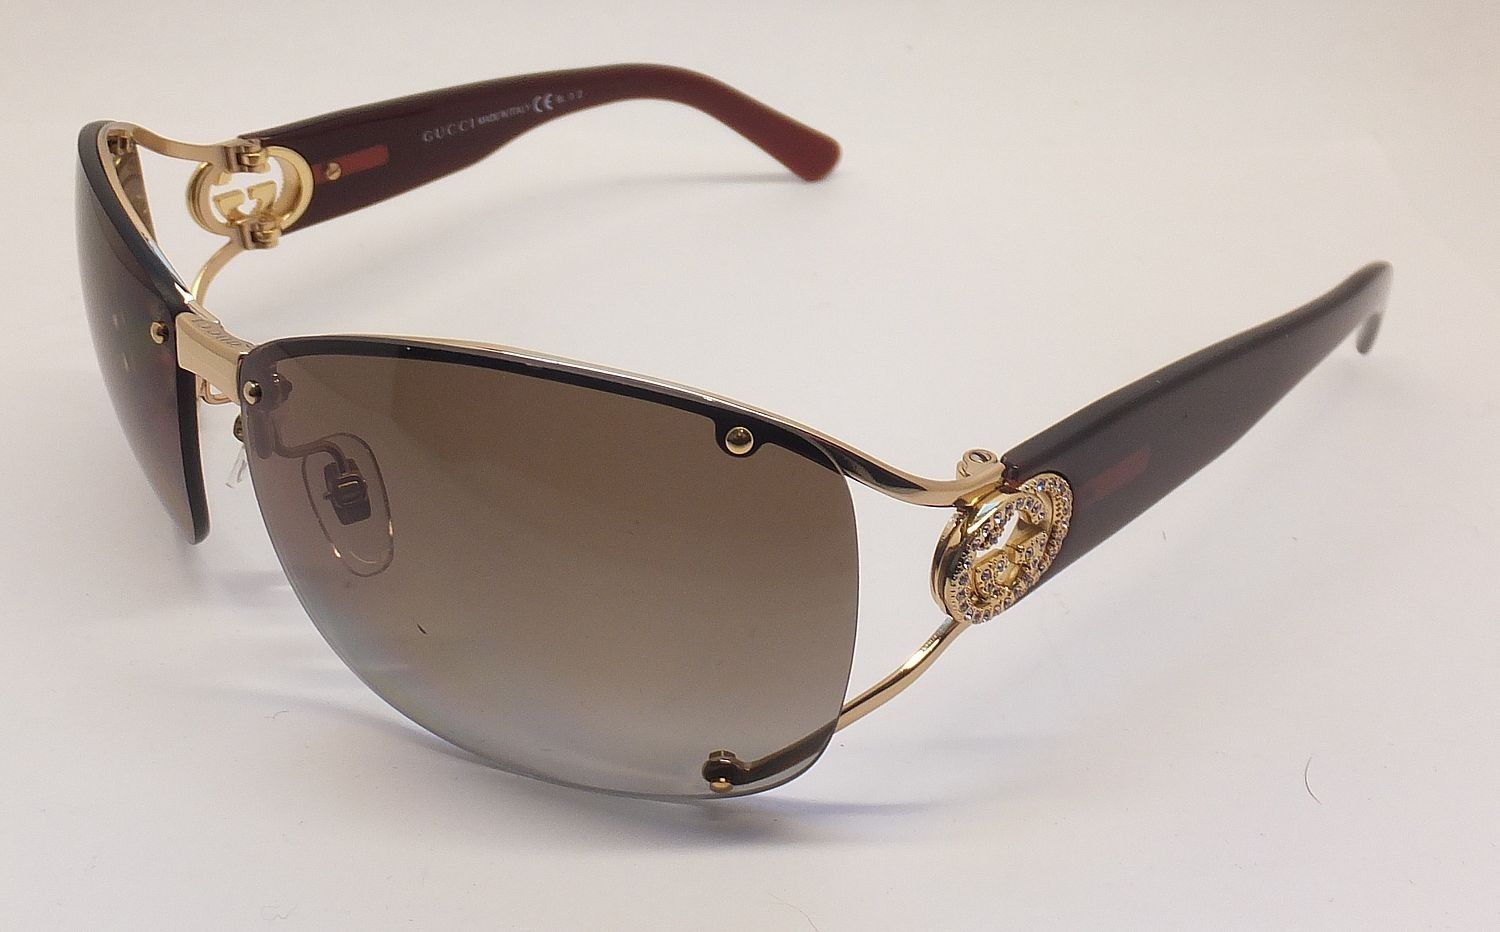 gucci sunglasses model 2820